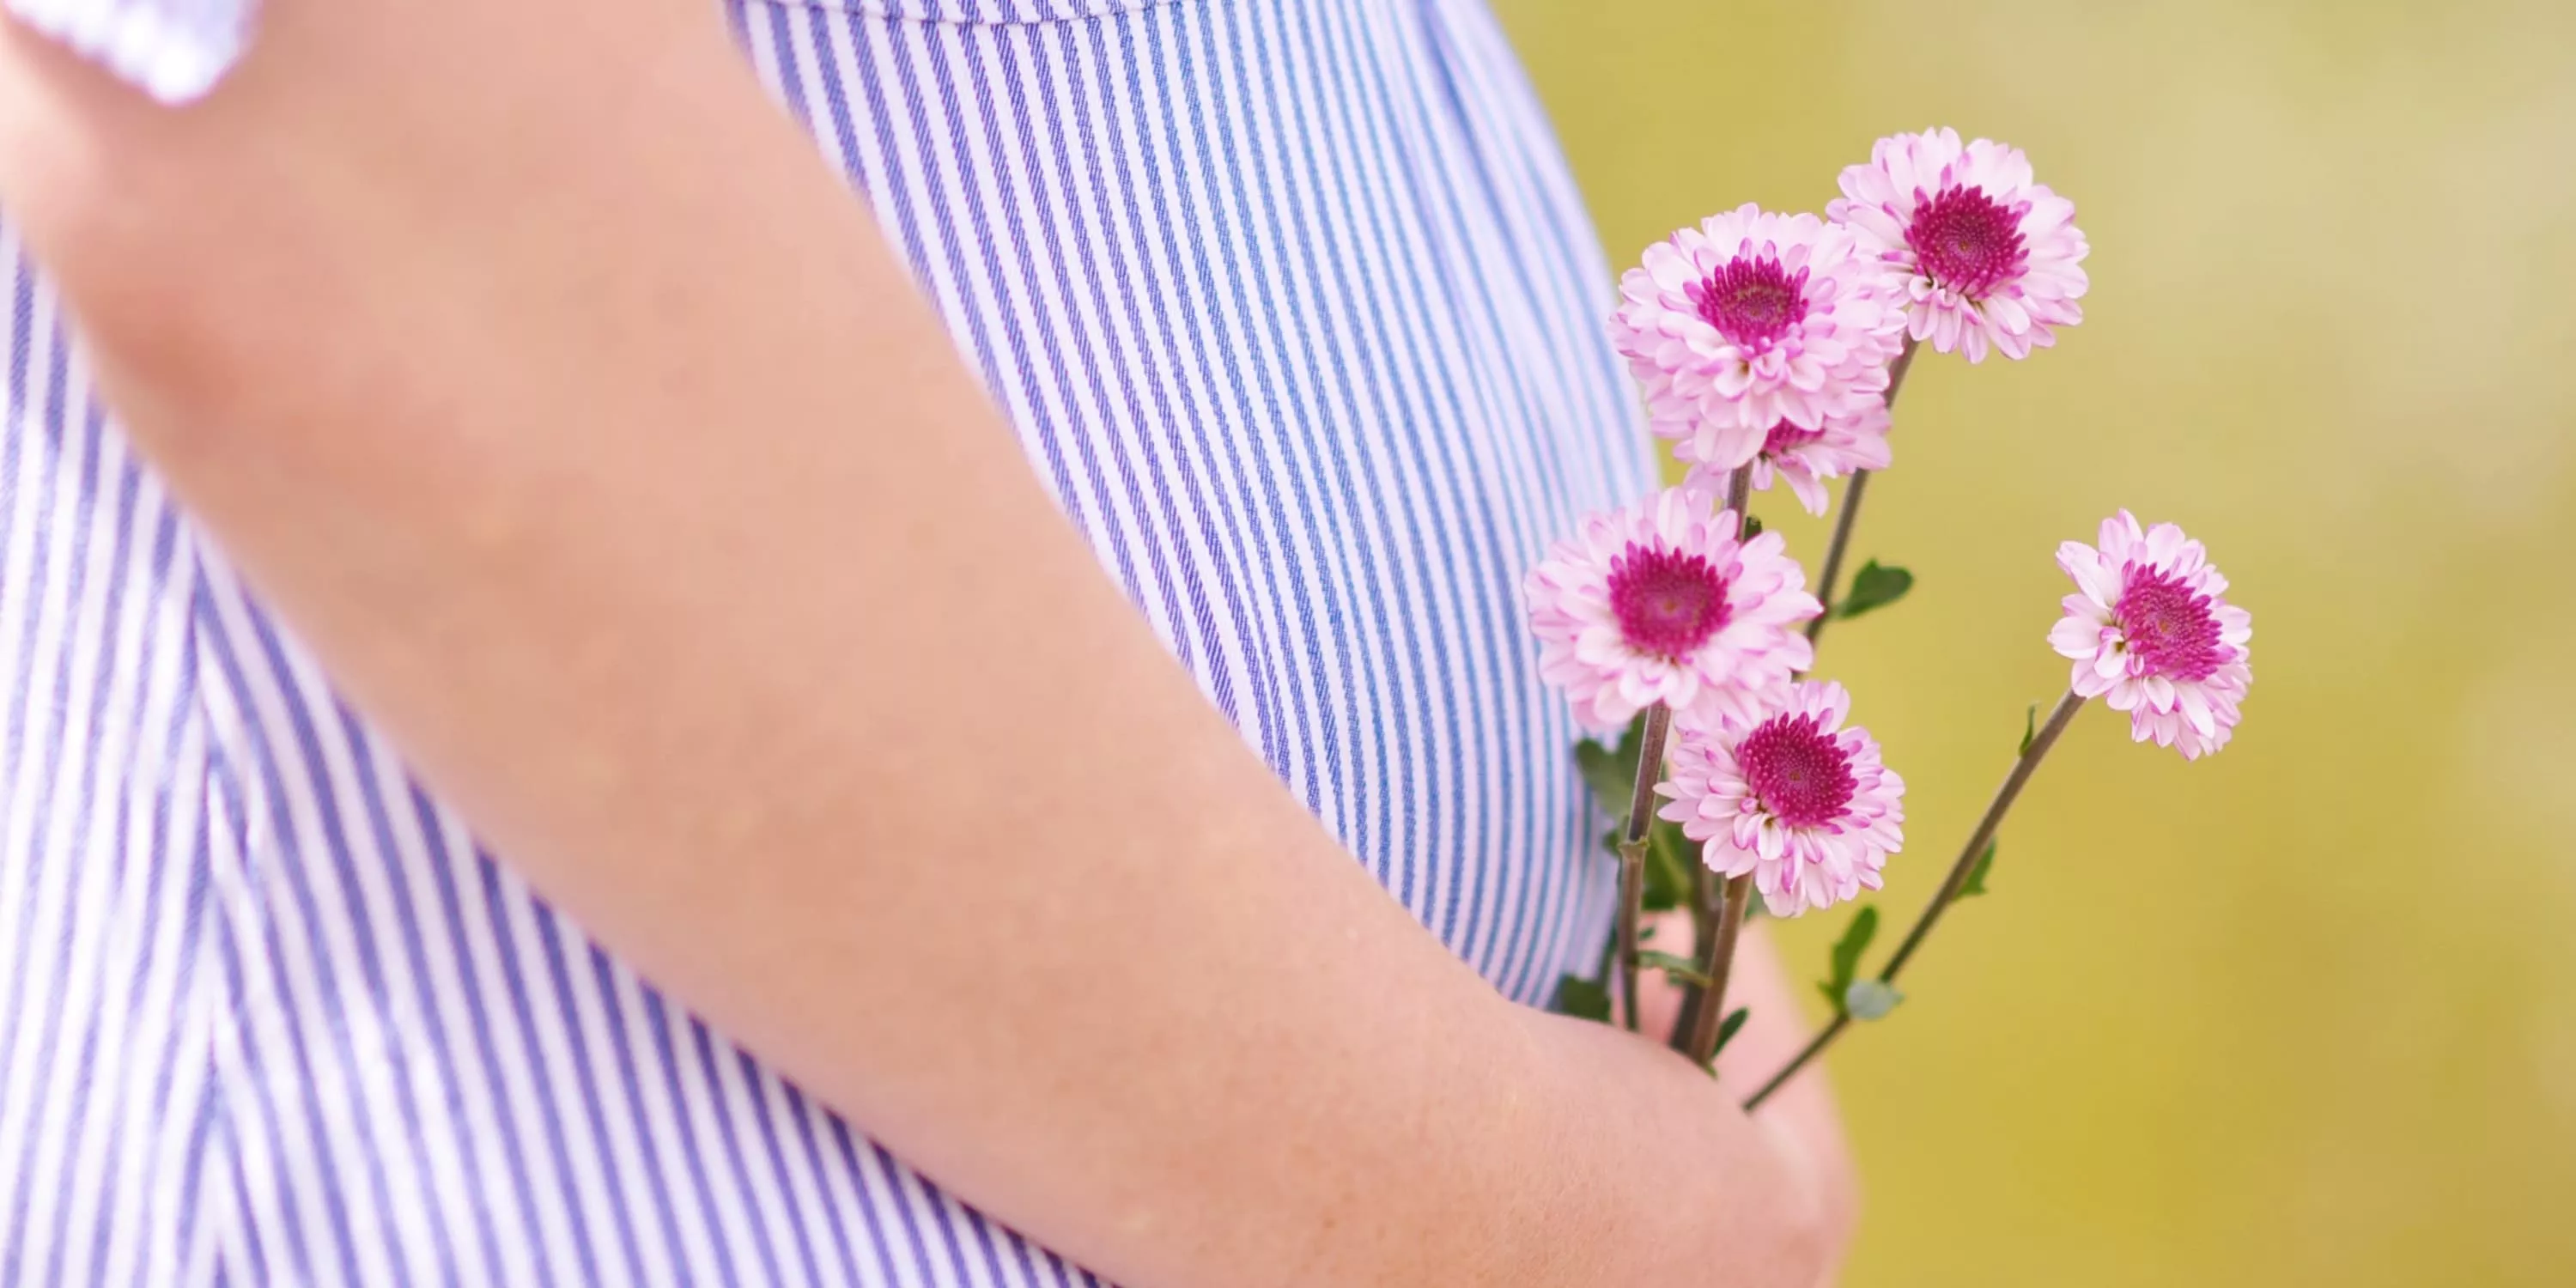 Recorte da barriga de uma mulher grávida que segura flores